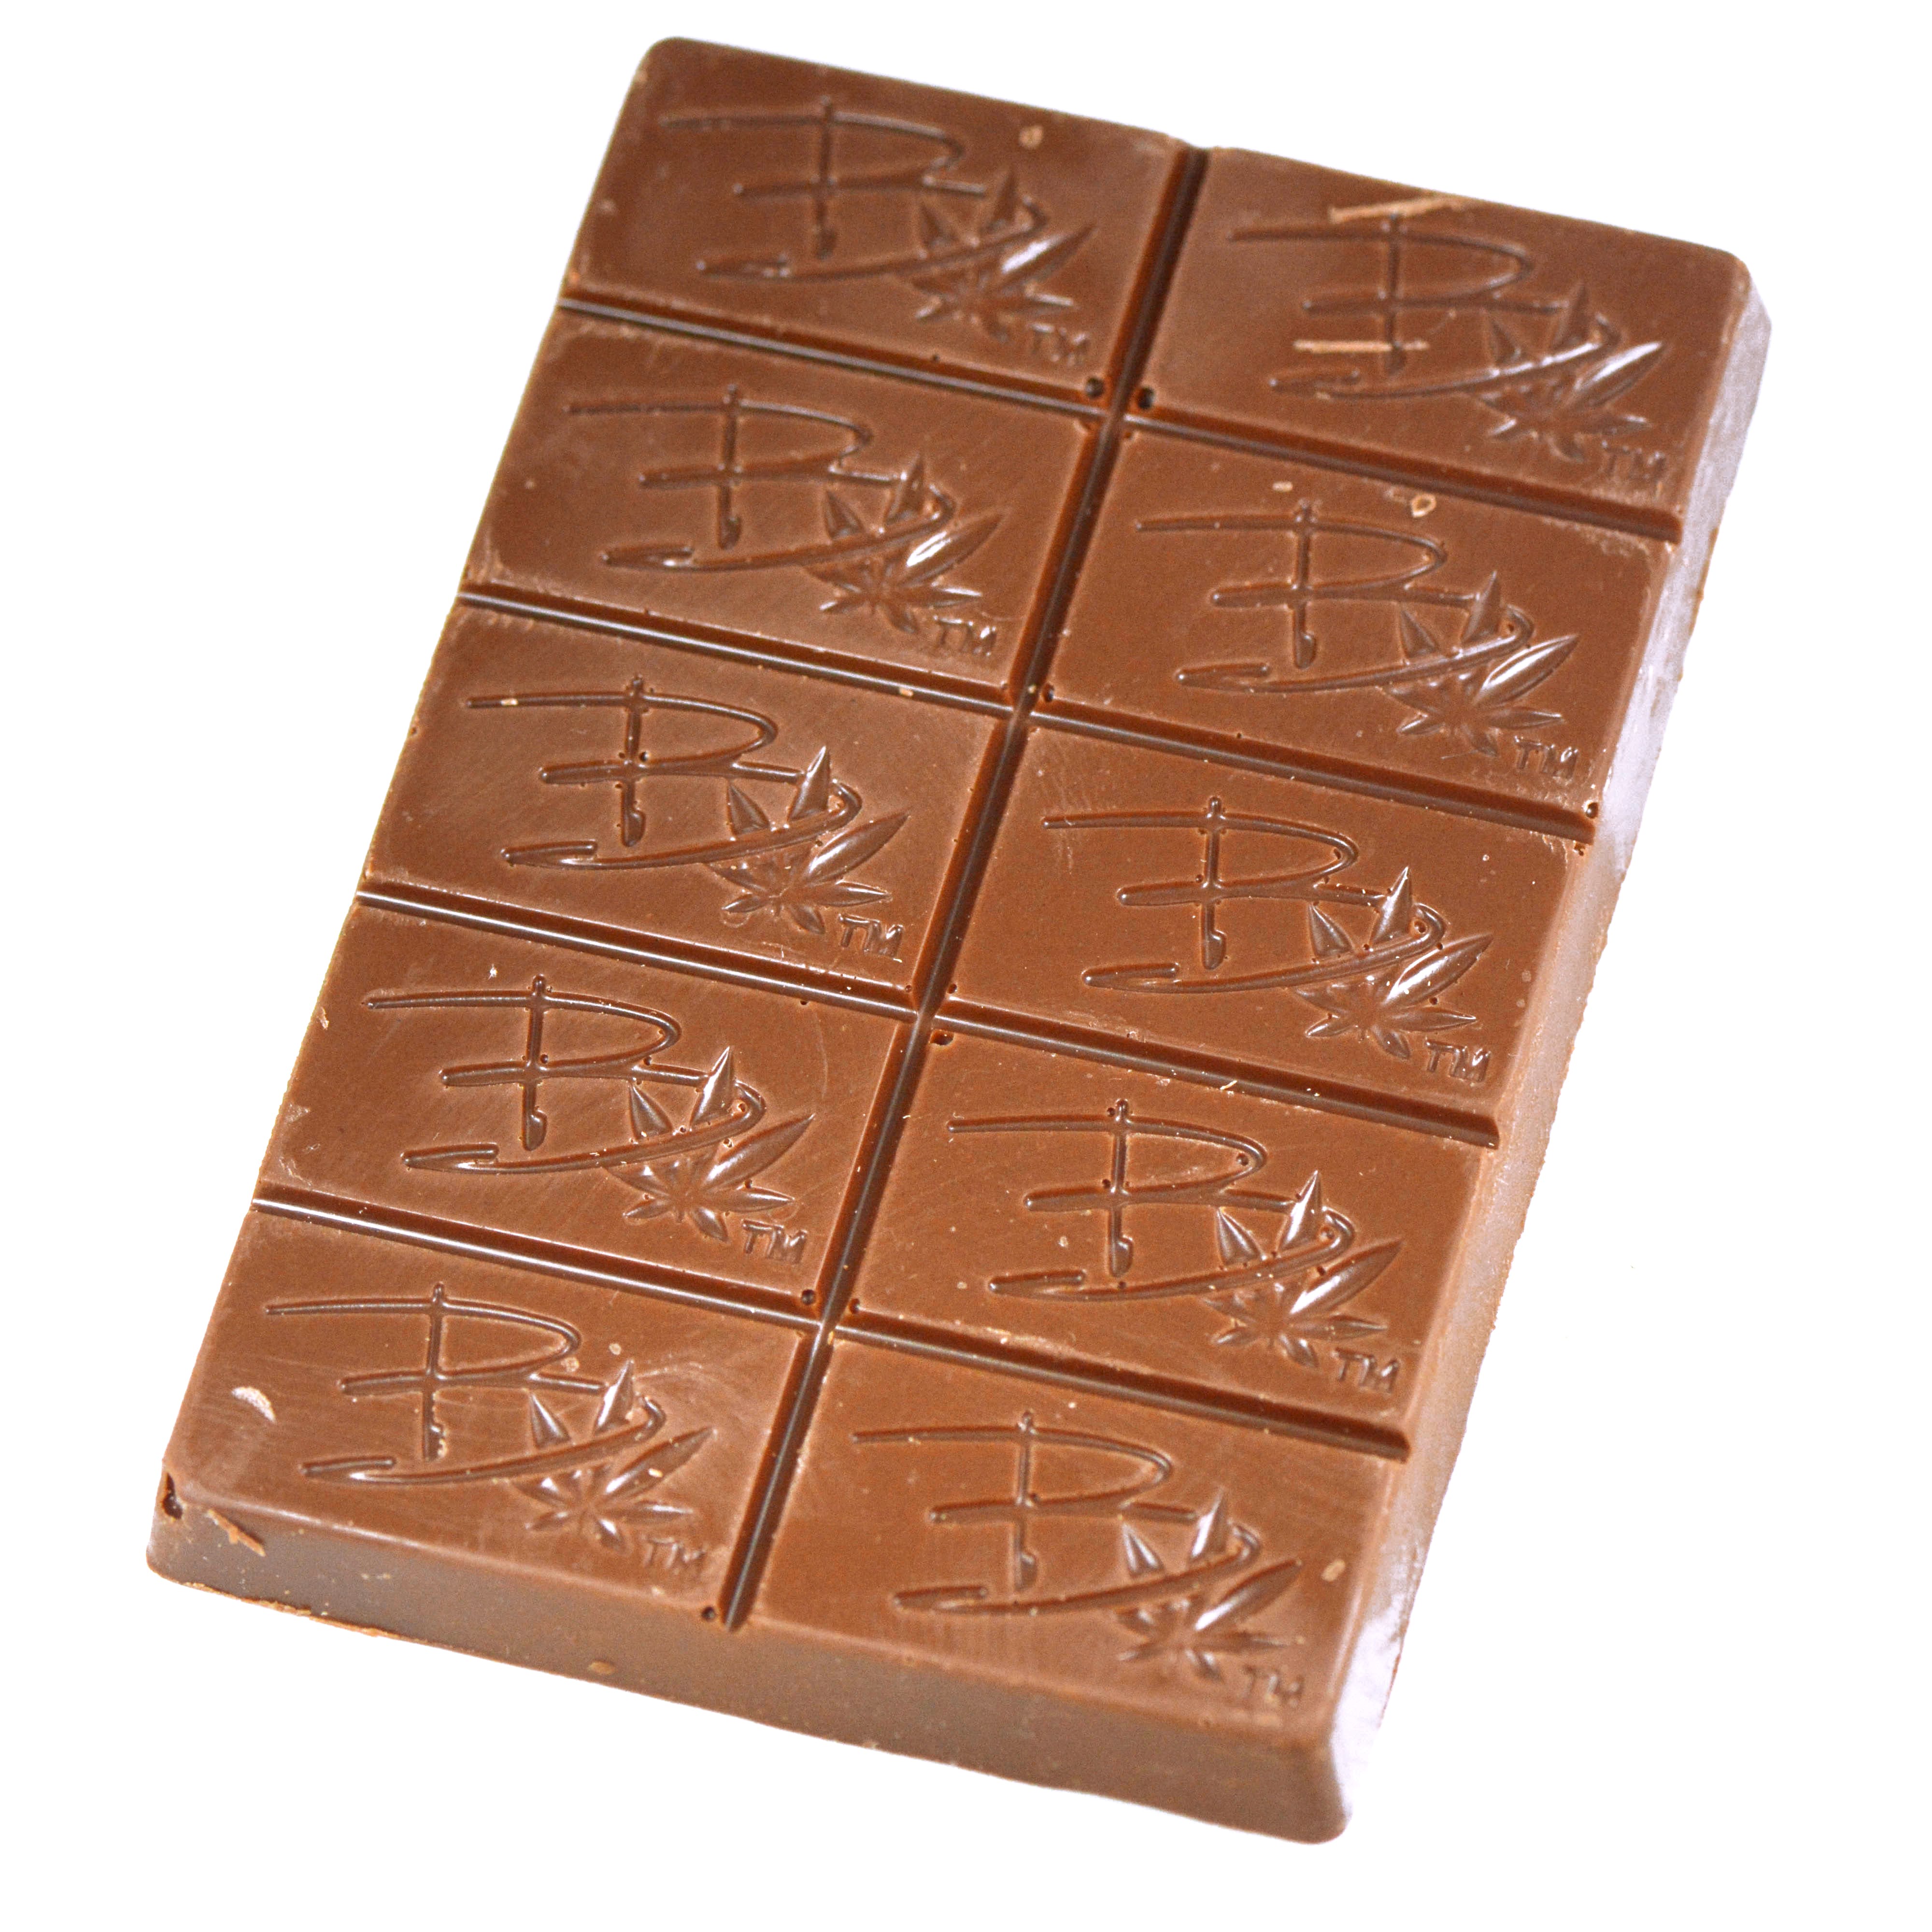 edible-bhang-cbd-caramel-chocolate